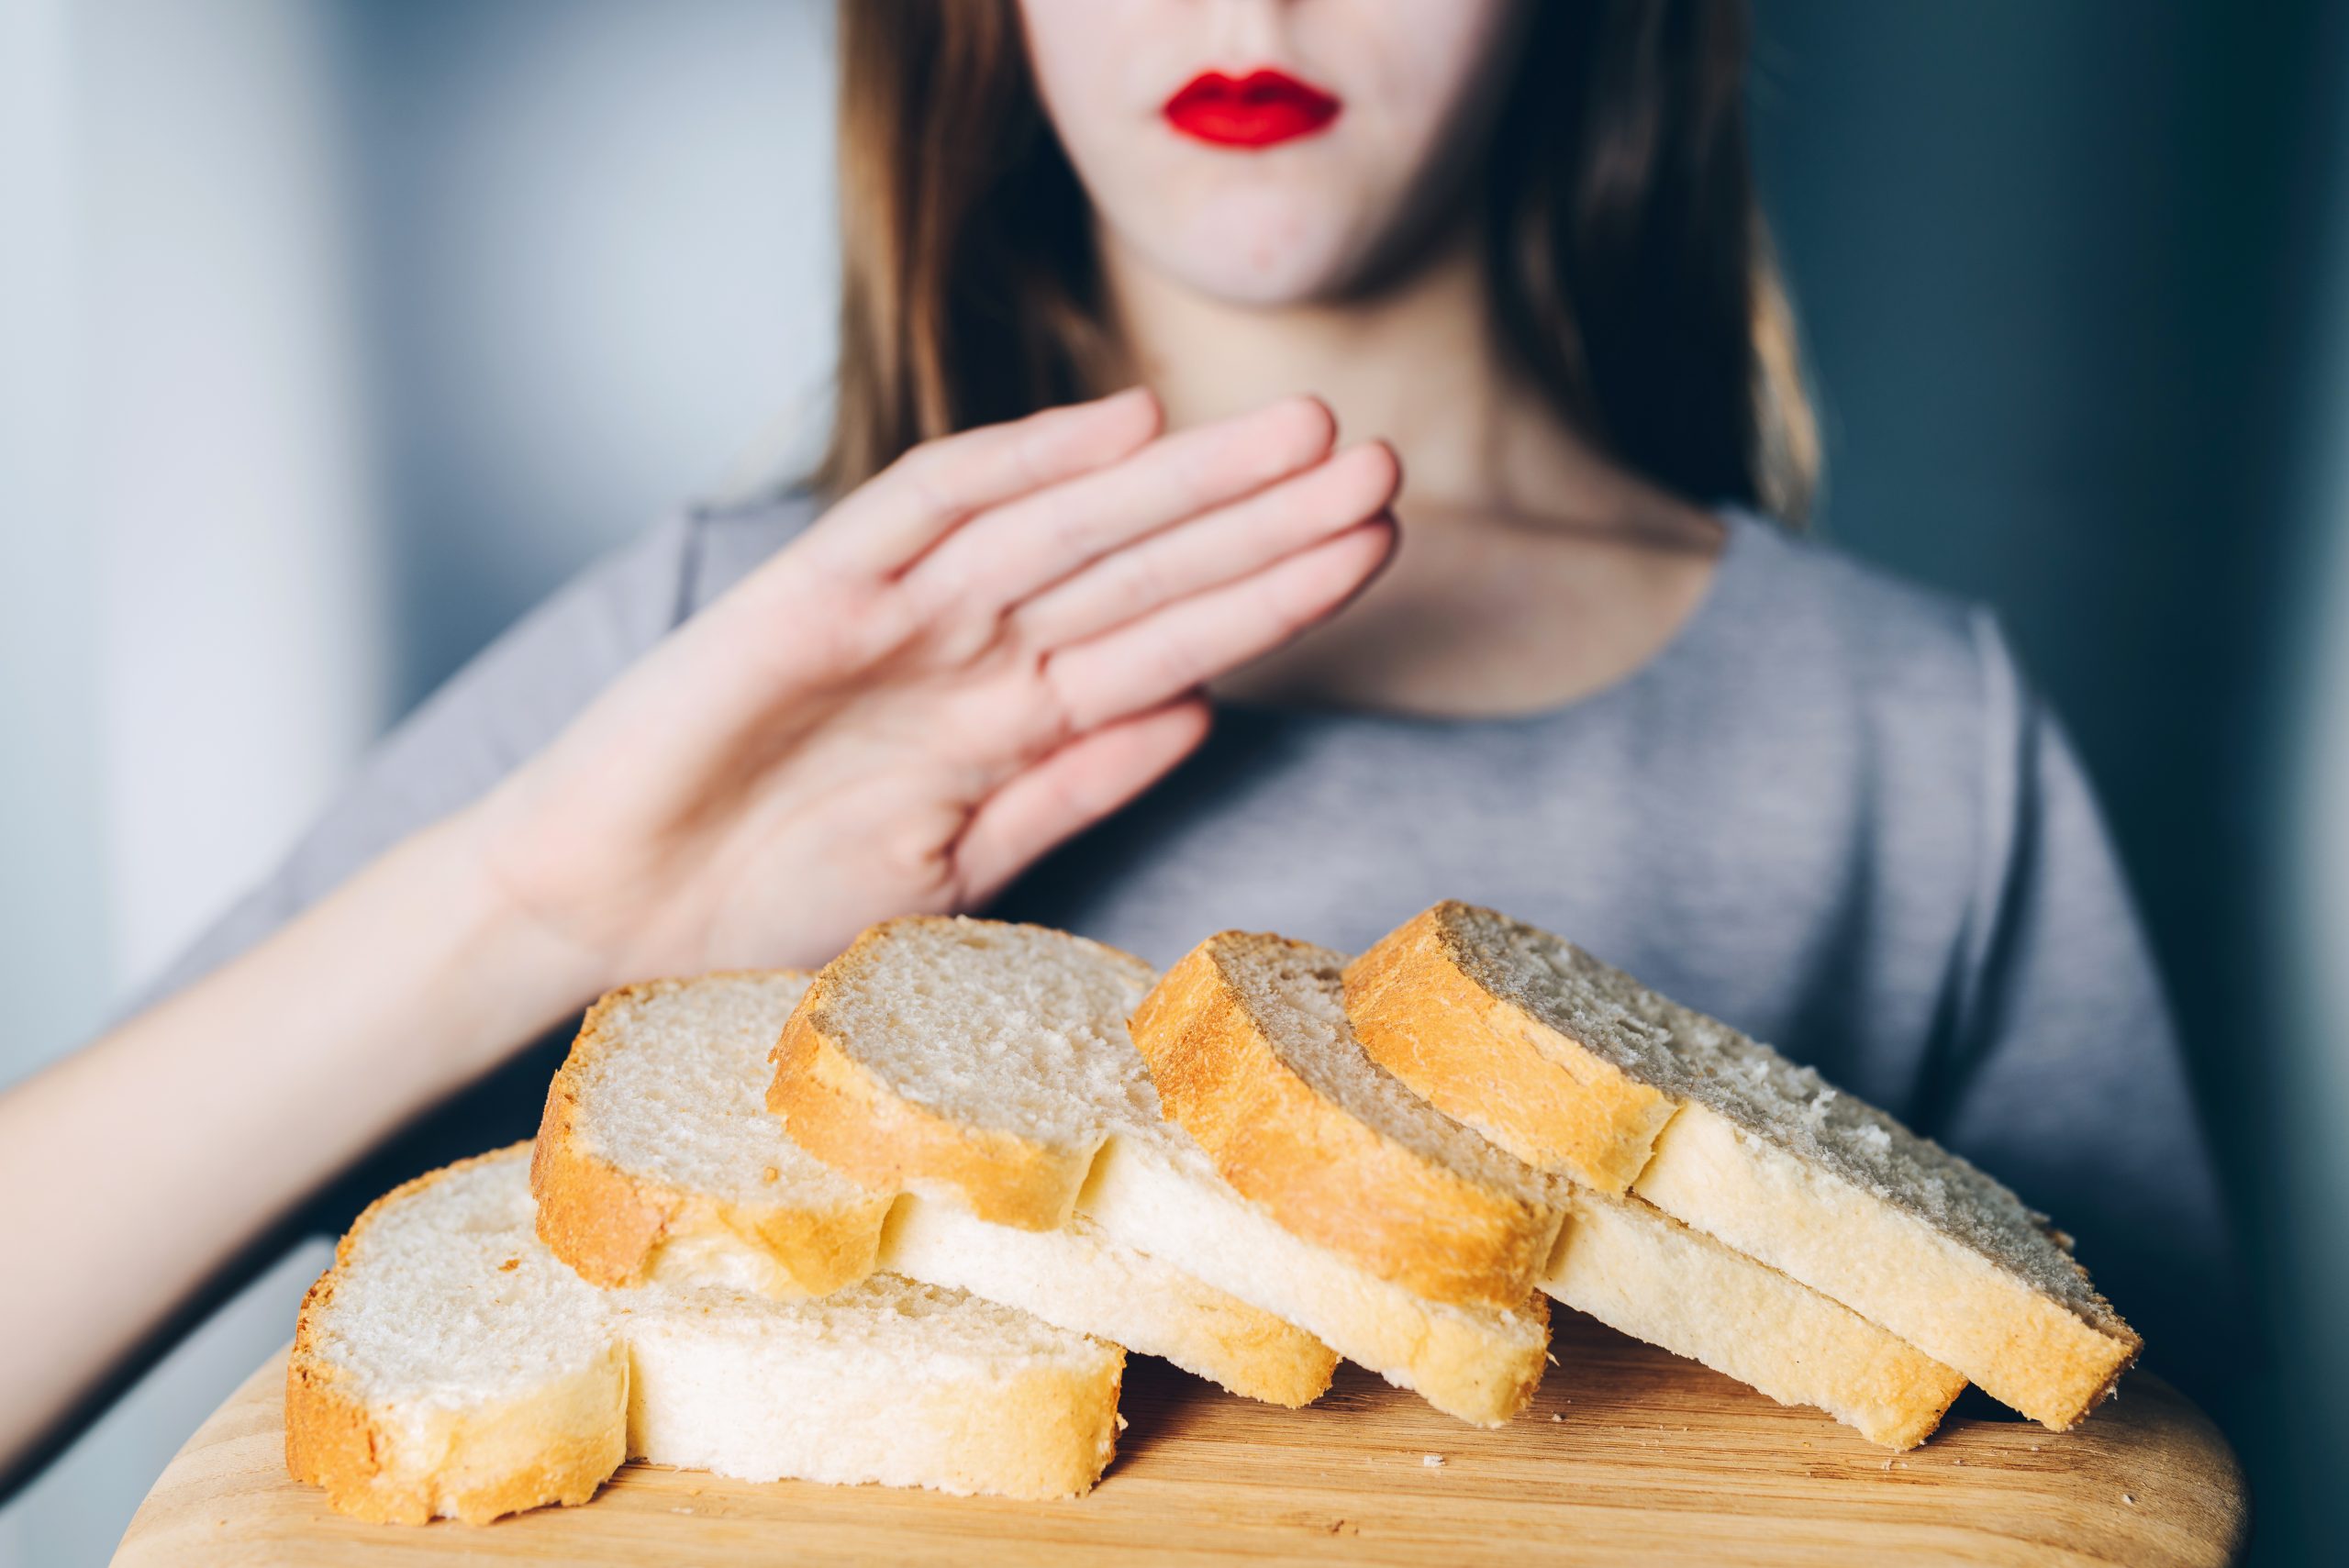 Человек есть много хлеба. Нарезанный хлеб. Кушать хлеб. Человек ест хлеб. Девушка с диетическими хлебцами.